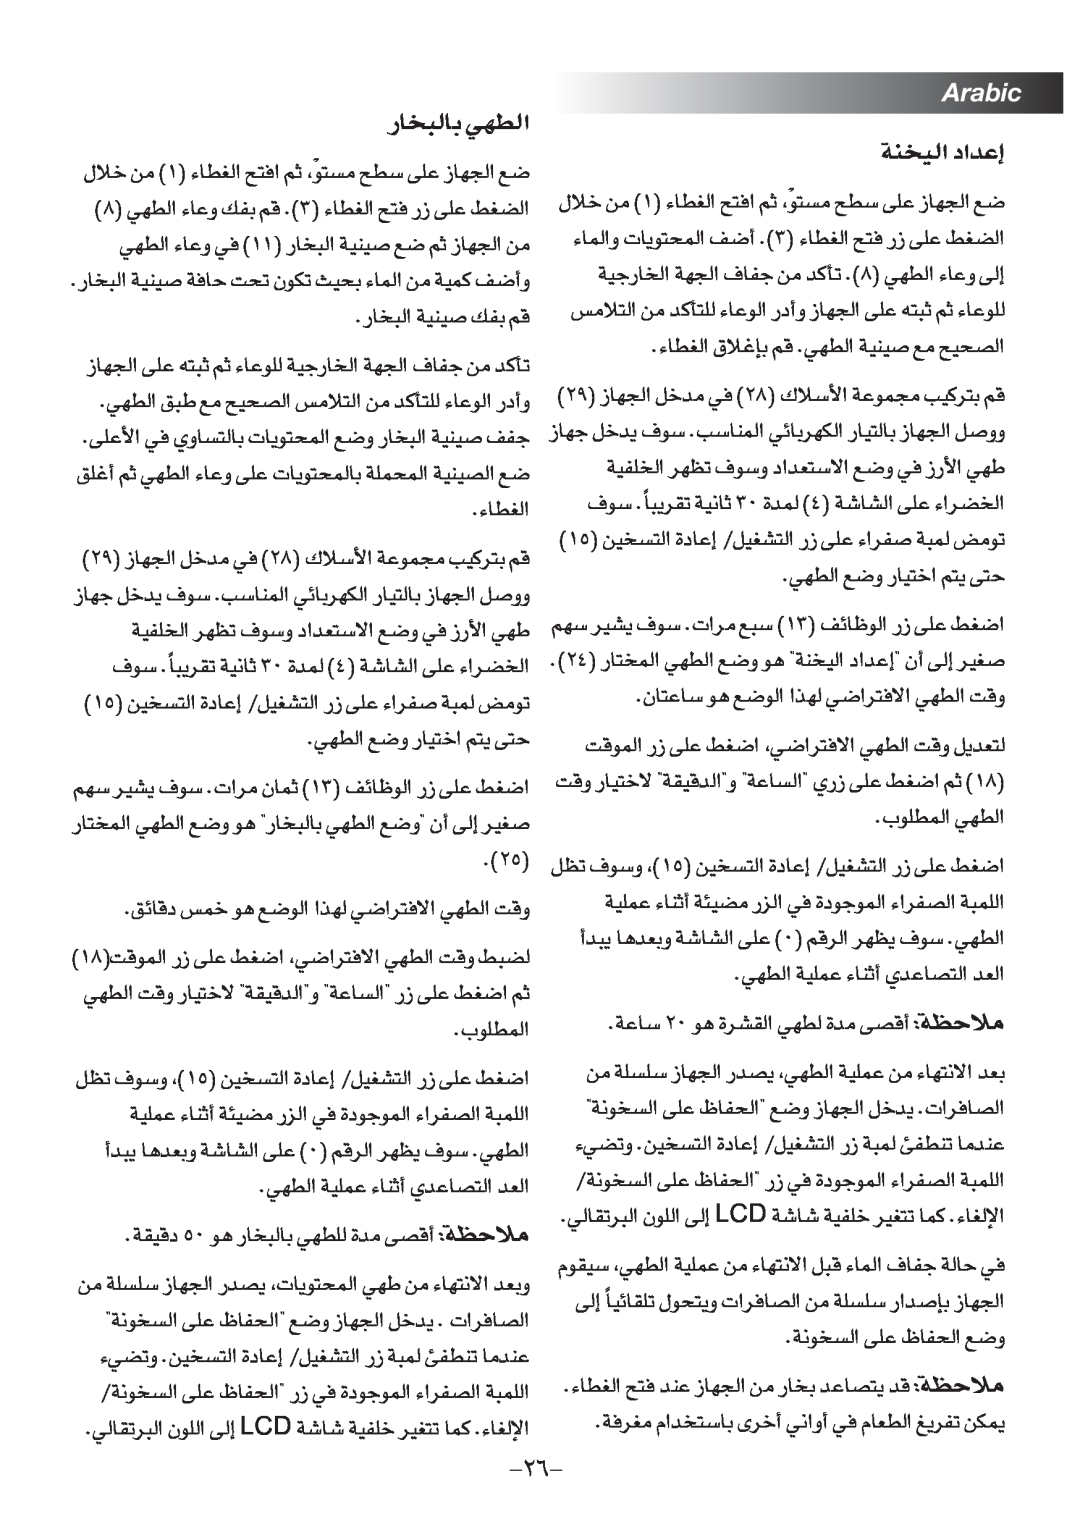 Black & Decker RC75 manual OªMW∞« ´b«œ≈, Arabic, DNw∞« Ël OU¸∑«î r∑¥ v∑ 